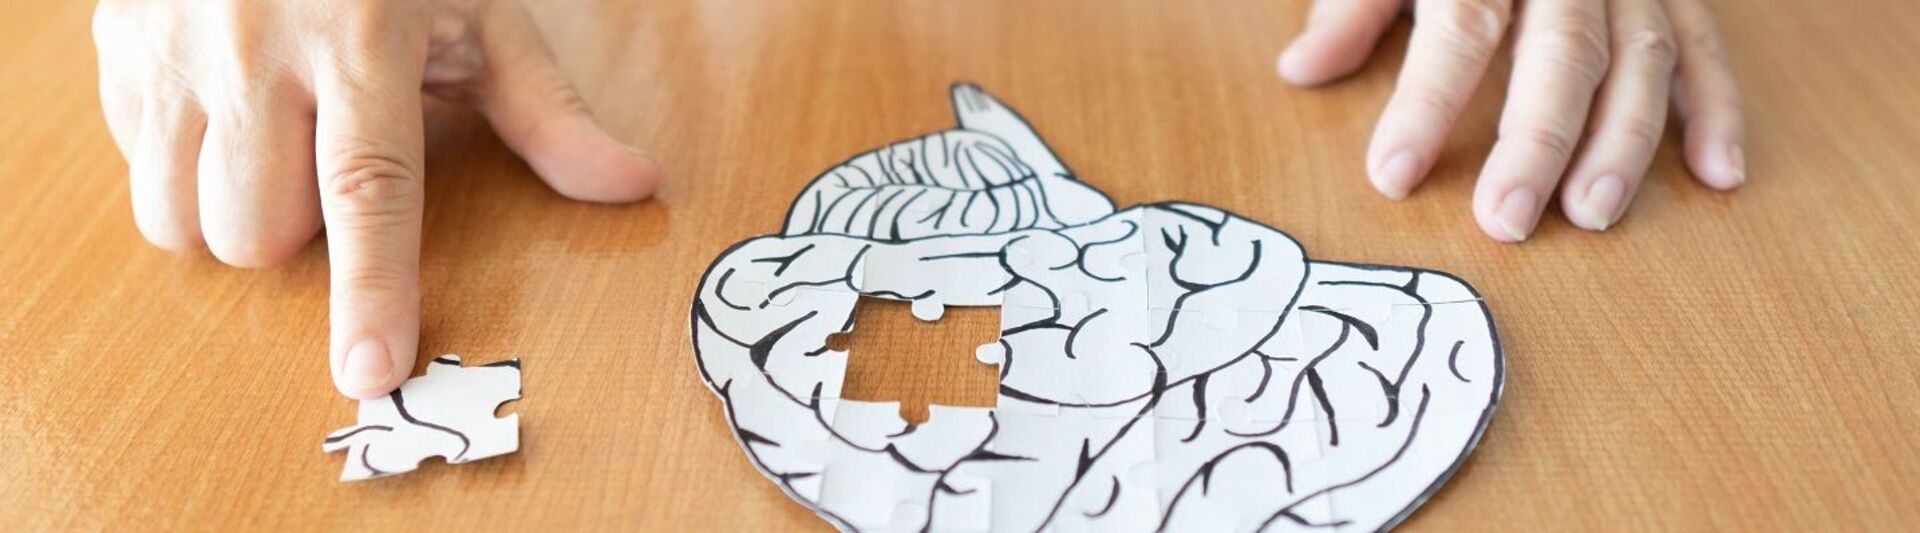 Frau löst ein Puzzle in Form eines Gehirns